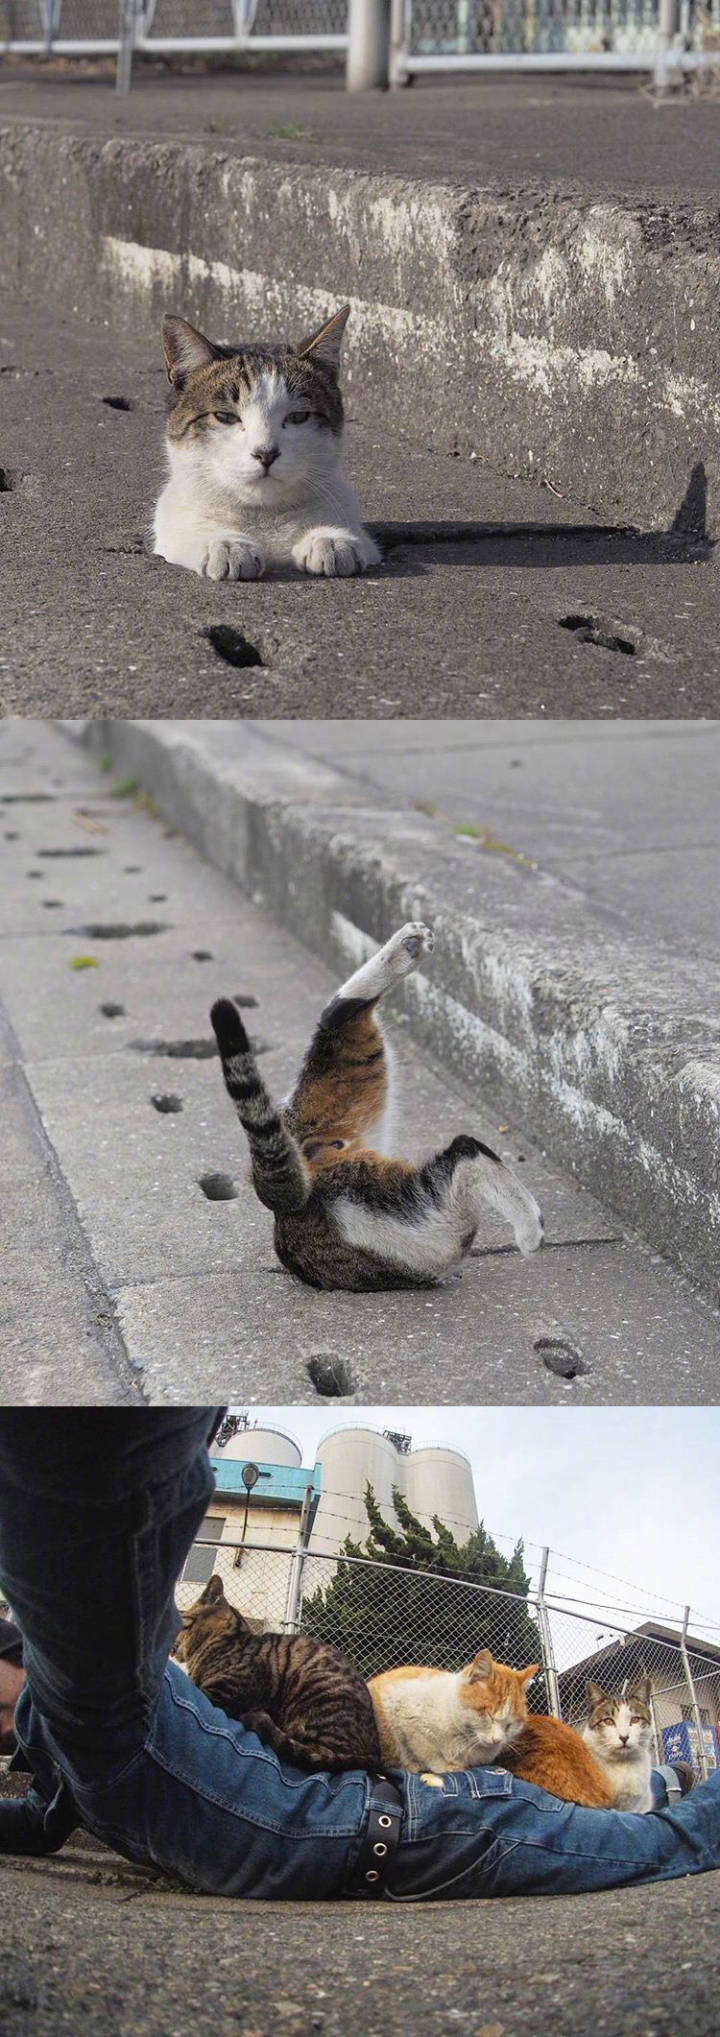 喵星人的喵星球#日本摄影师nyankichi拍摄的一组喜欢钻地洞的流浪猫咪